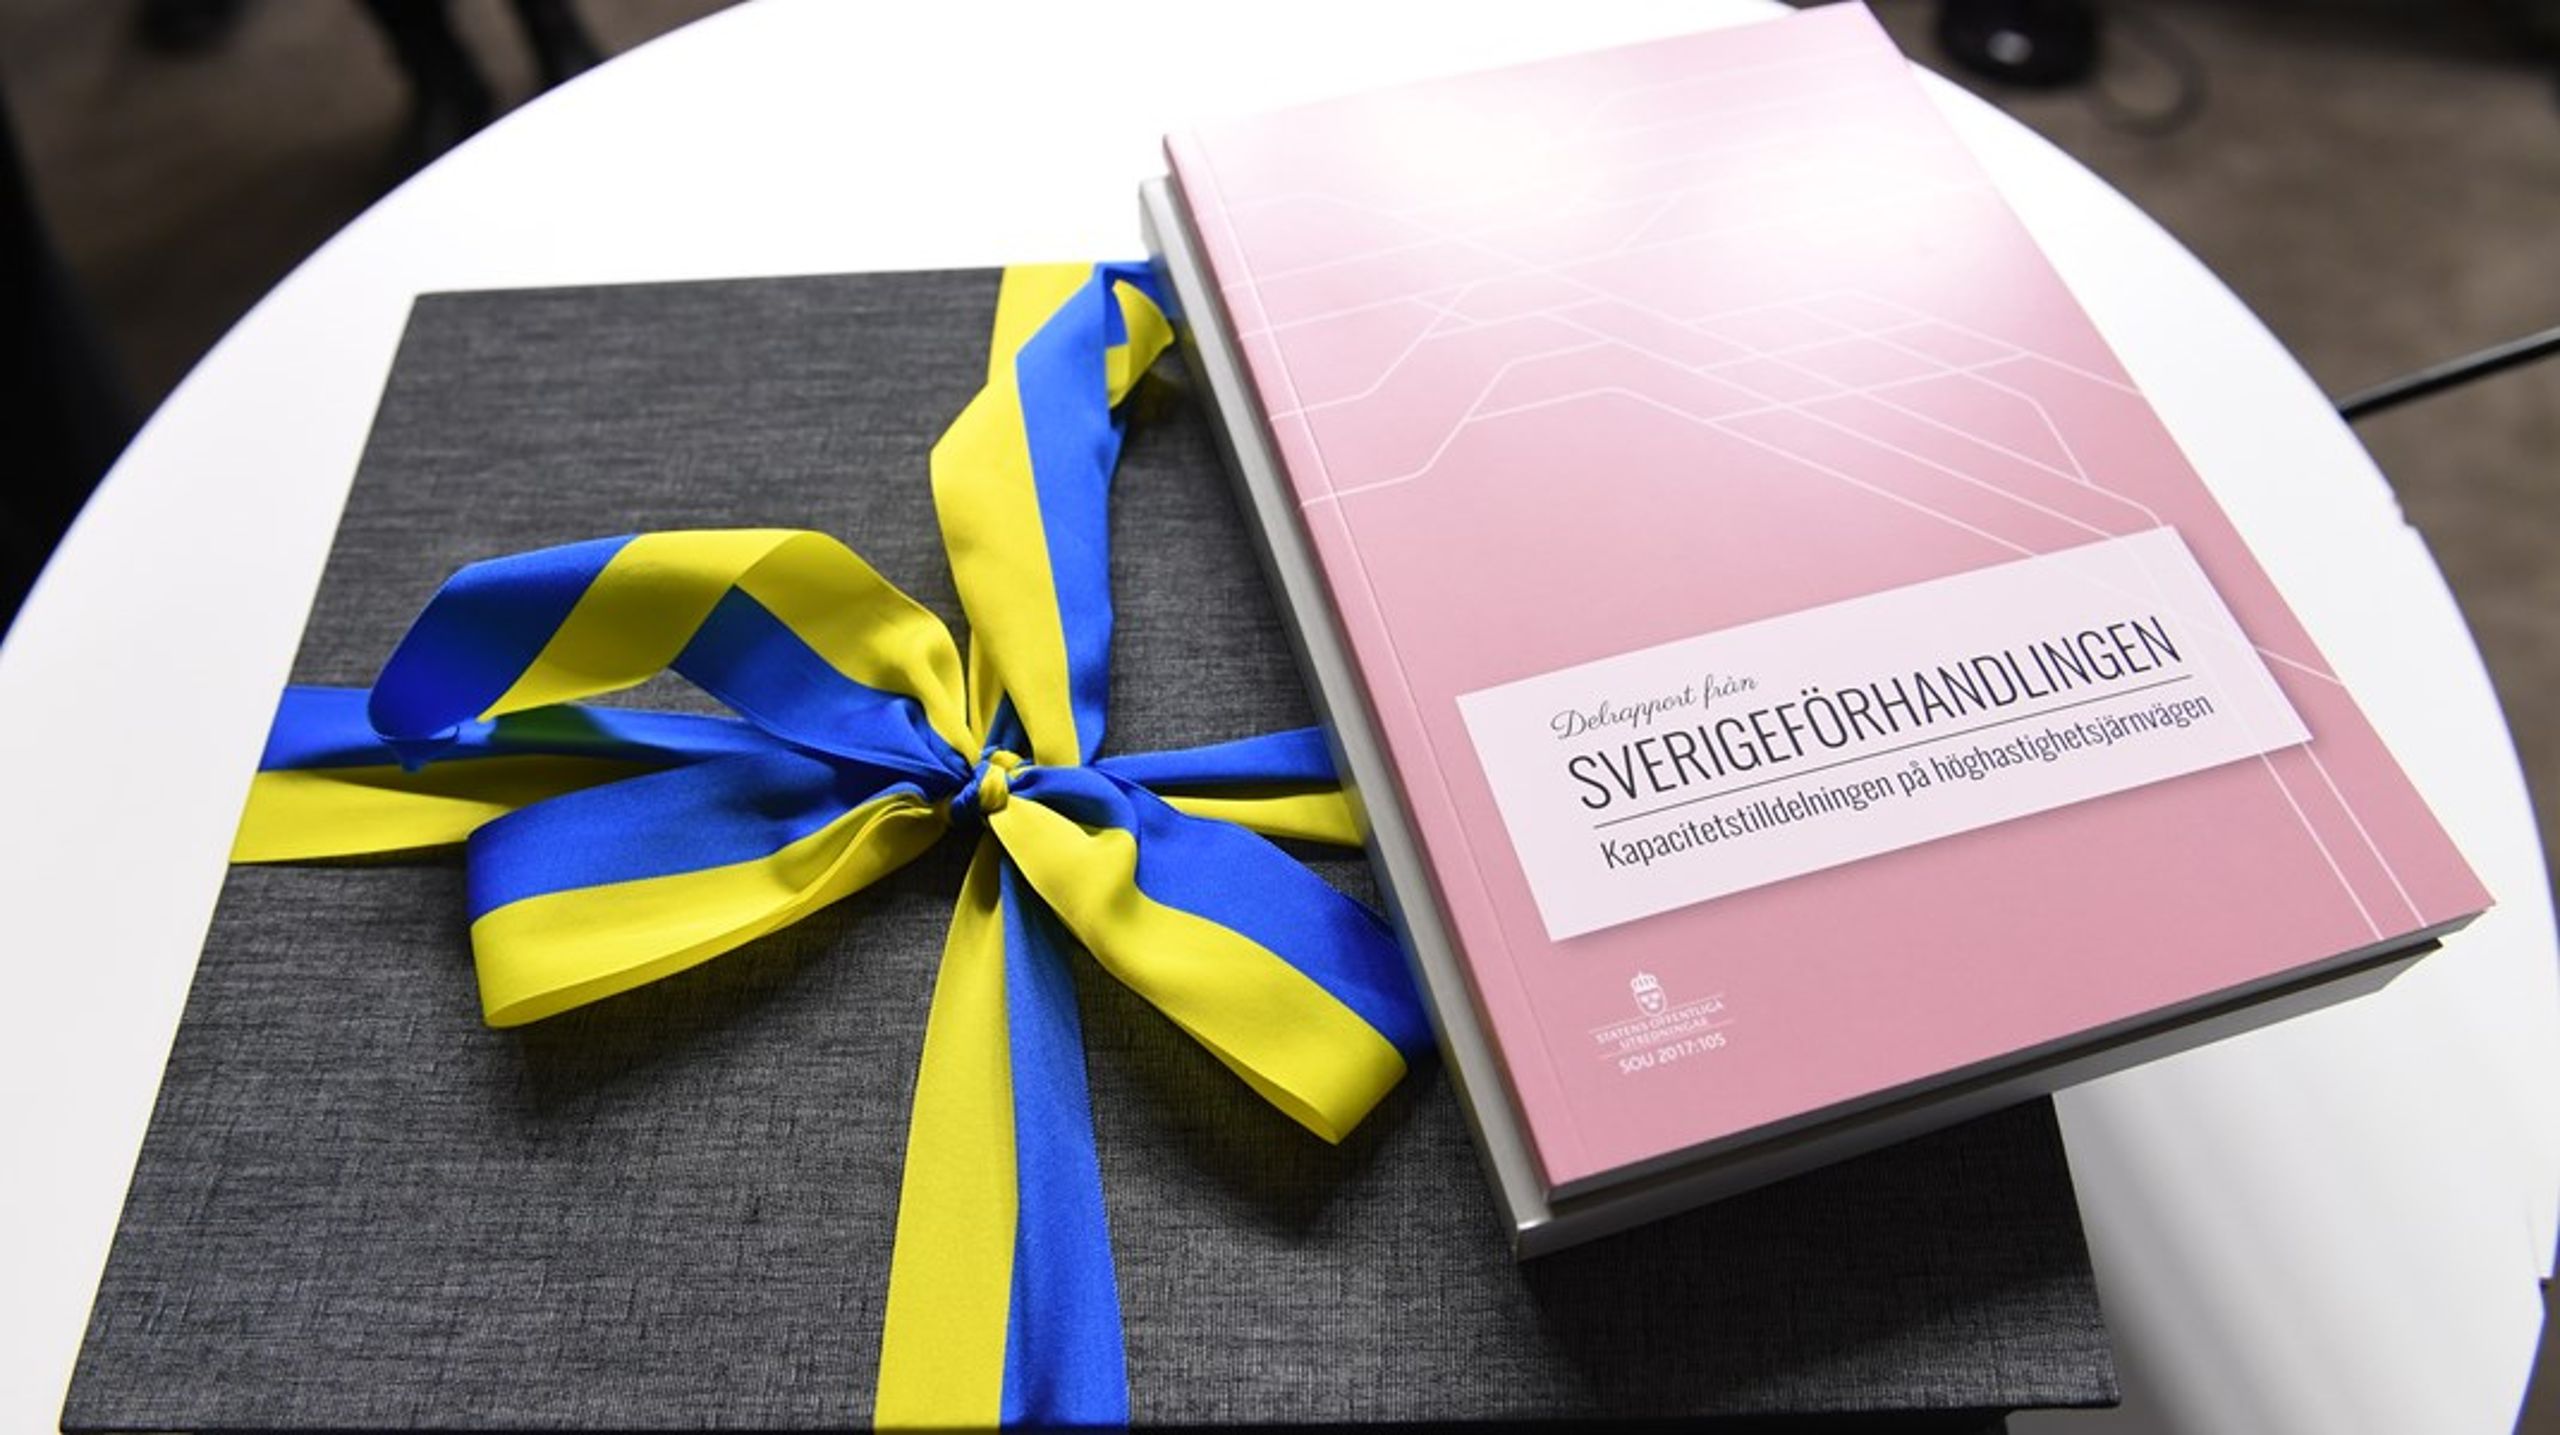 År 2014 påbörjade den dåvarande regeringen Sverigebygget som sedan löpte vidare till Sverigeförhandlingen vars slutrapport lades fram 2017.